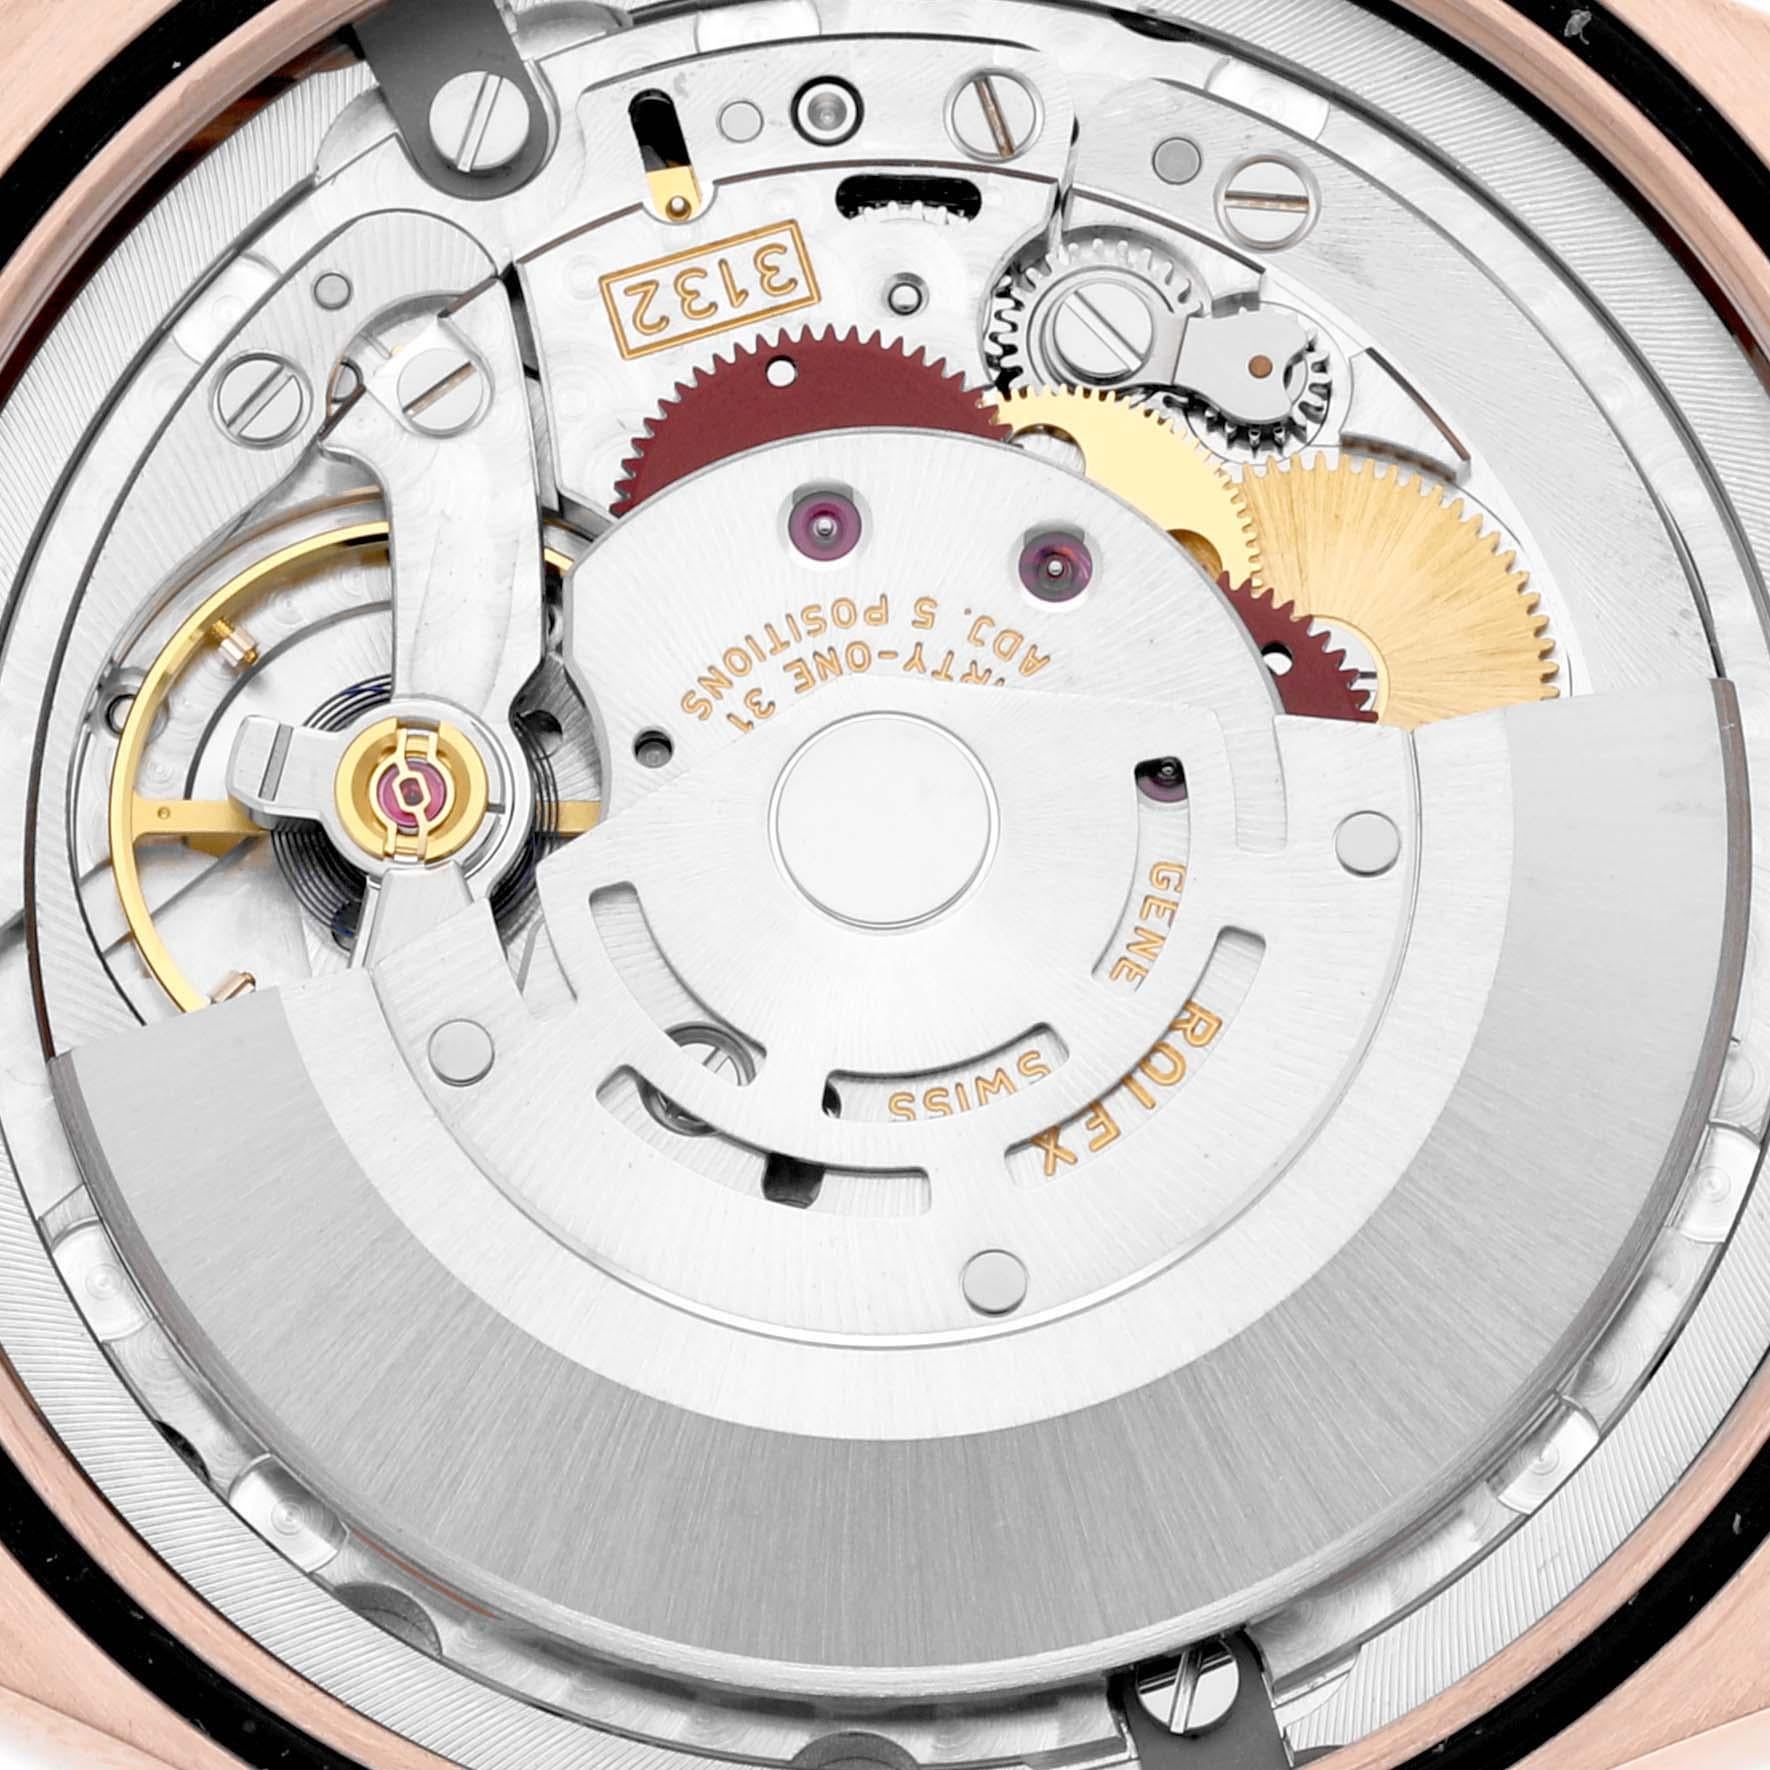 Rolex Cellini Time Weißes Zifferblatt Rose Gold Herrenuhr 50505. Automatisches Uhrwerk mit Selbstaufzug. Offiziell zertifizierter Schweizer Chronometer (COSC). Paramagnetische blaue Parachrom-Spirale. Bidirektionaler Automatikaufzug über